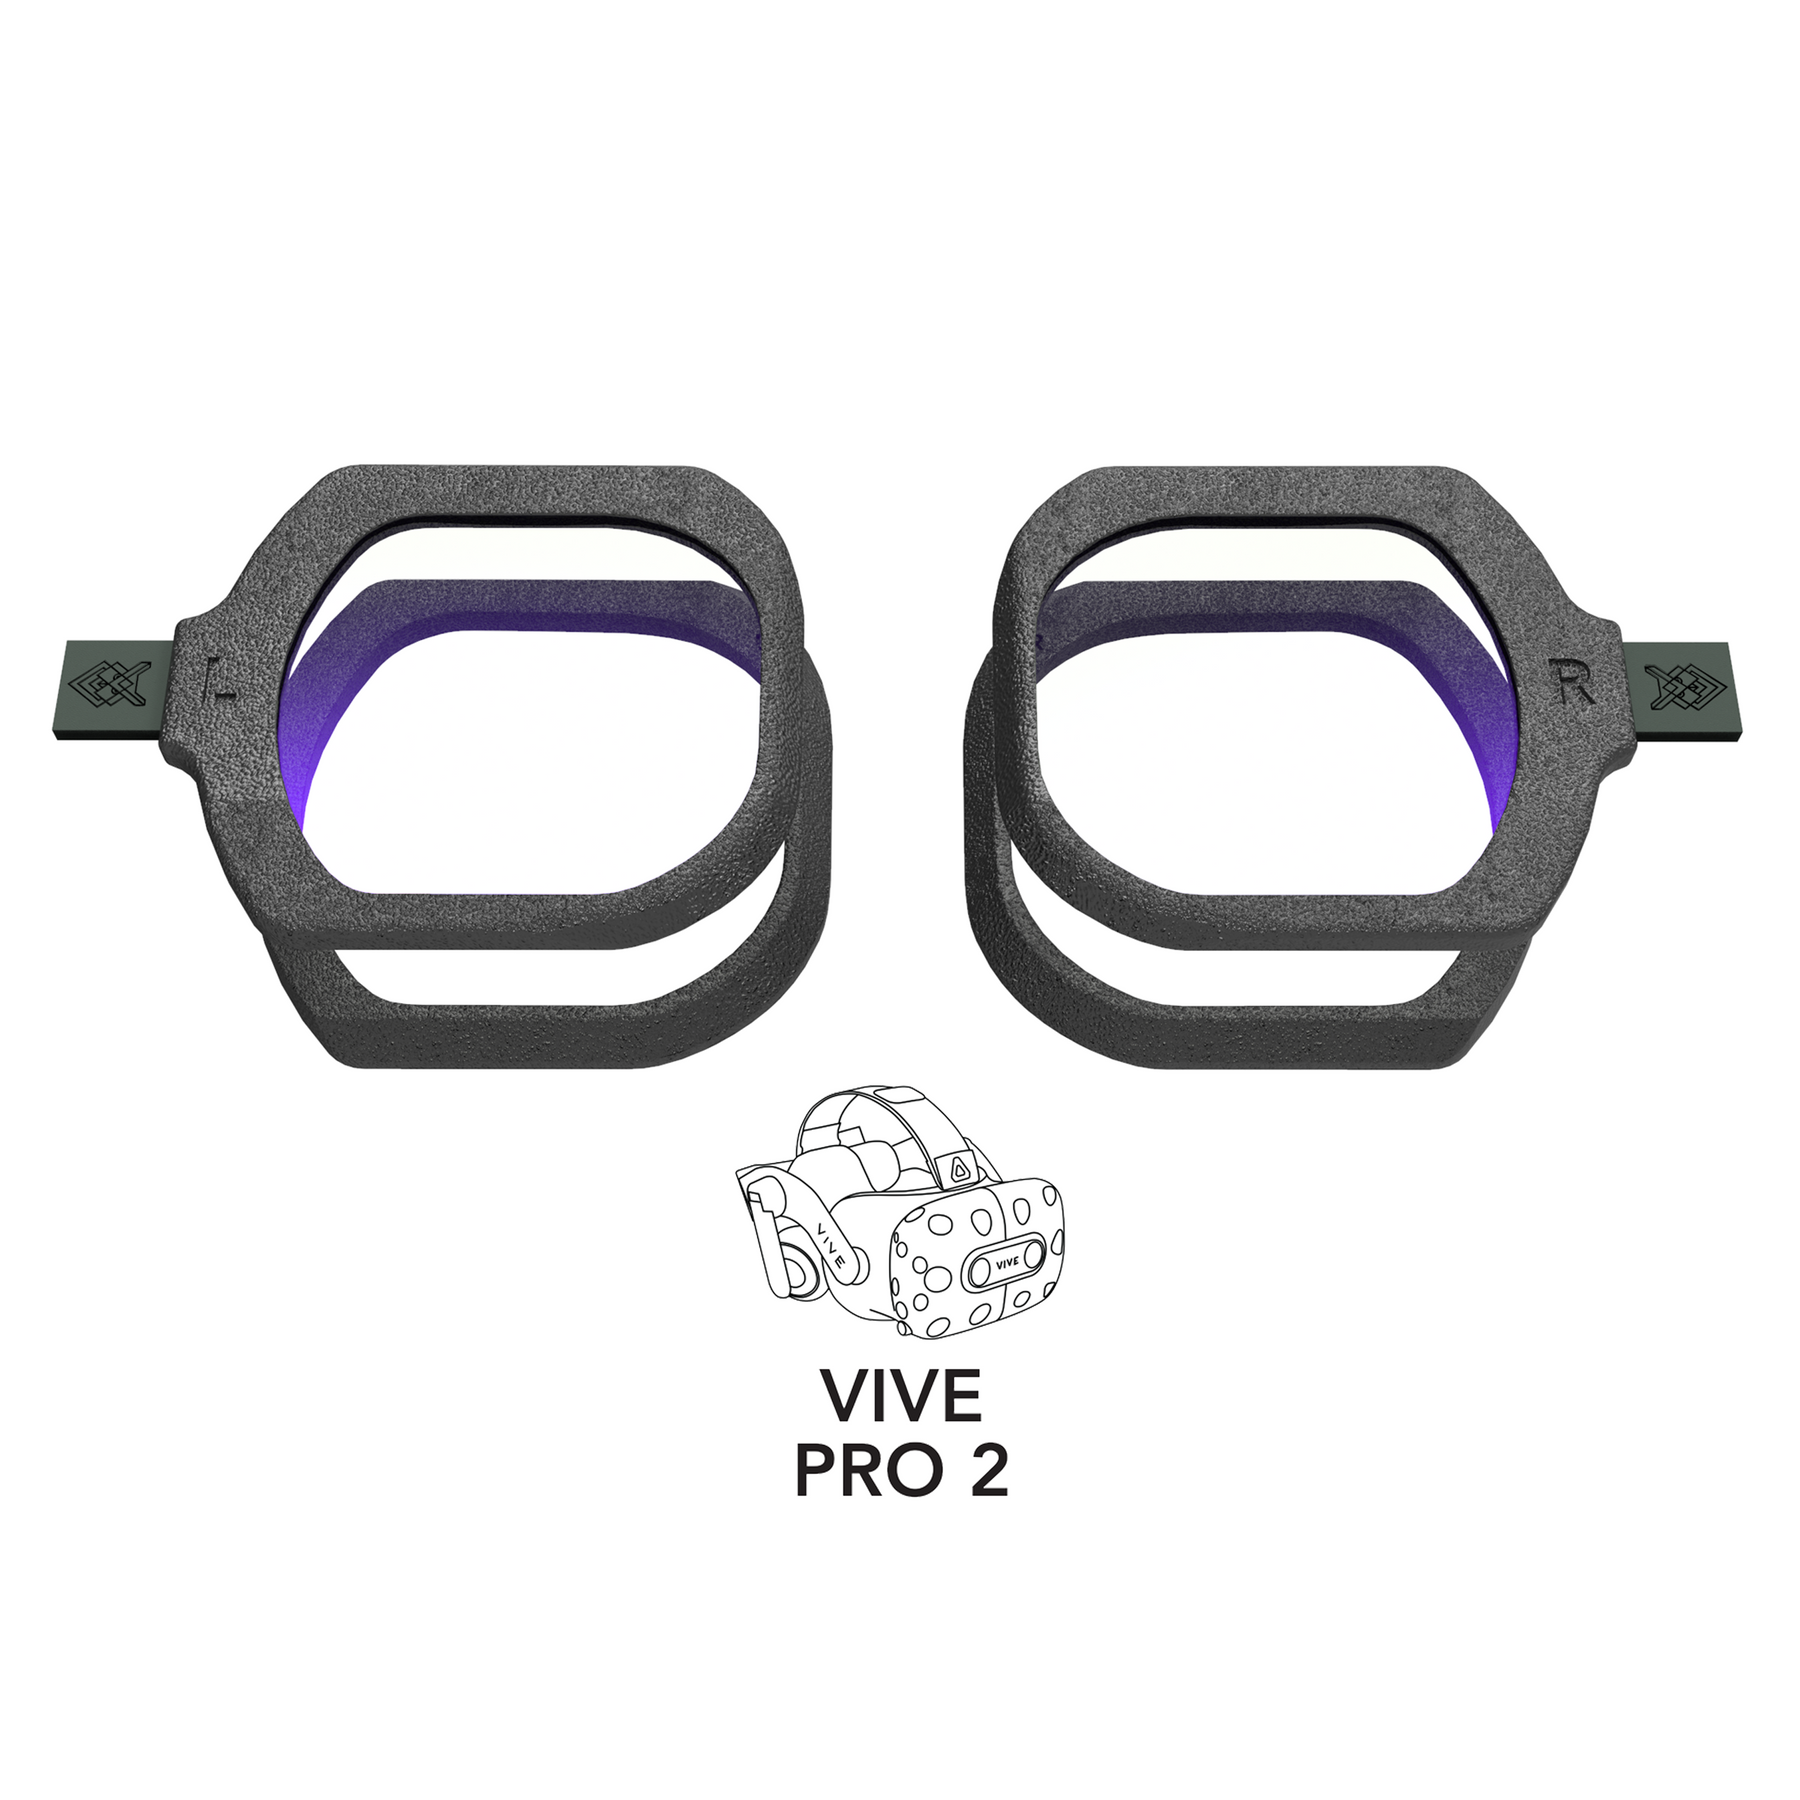 VIVE Pro 2 Prescription Lens Adapters